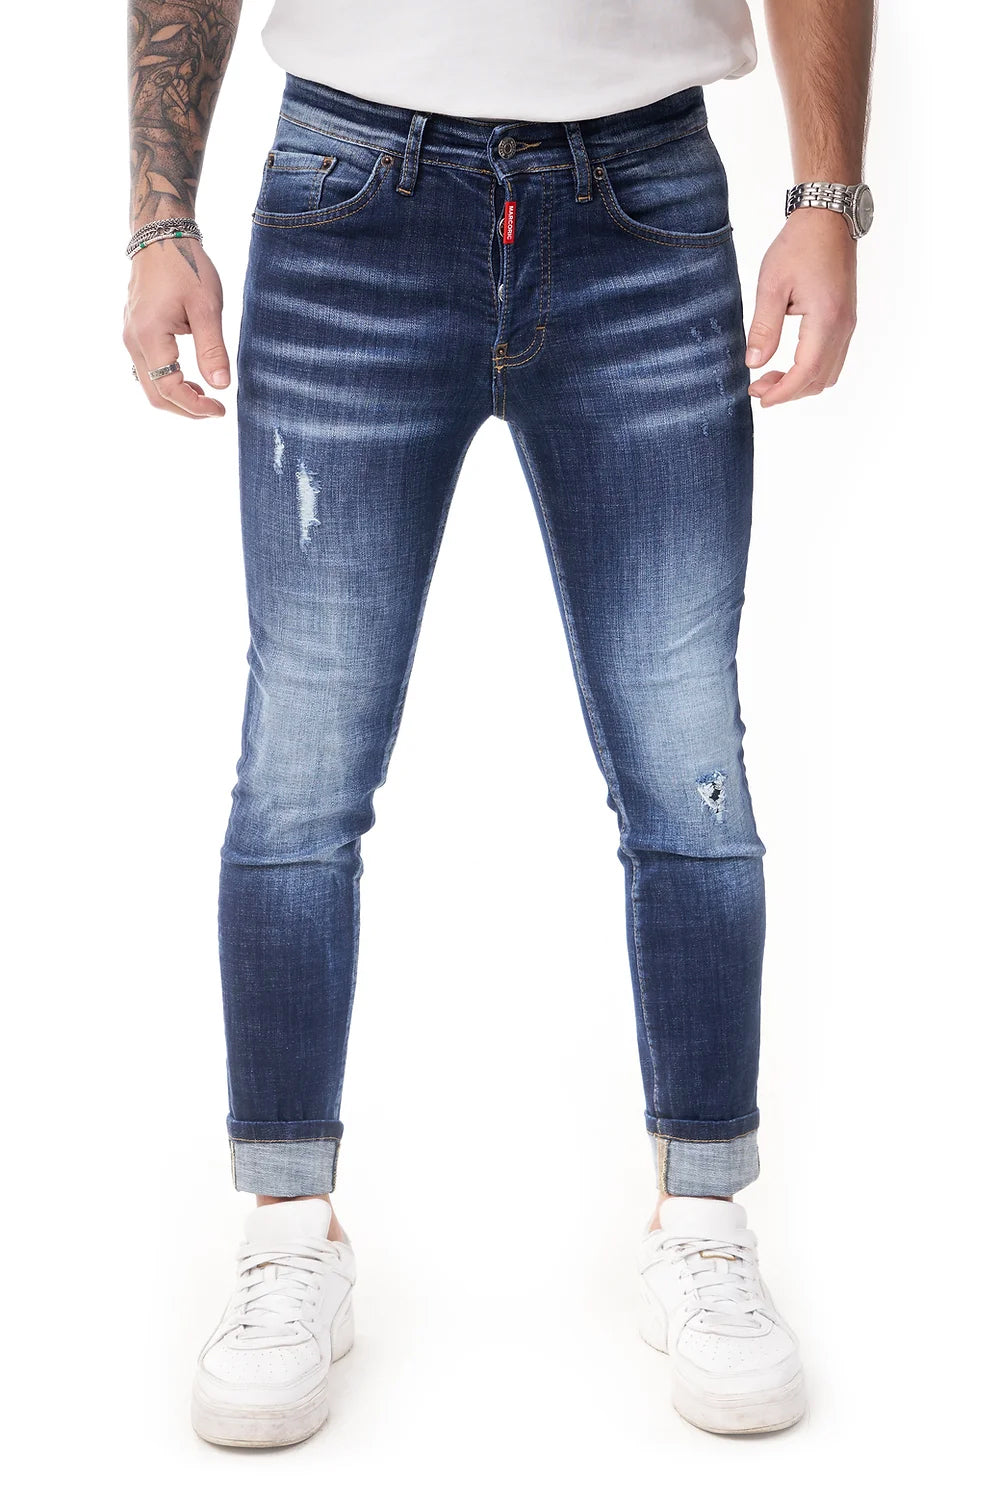 Marcoric Jeans Model E 2294